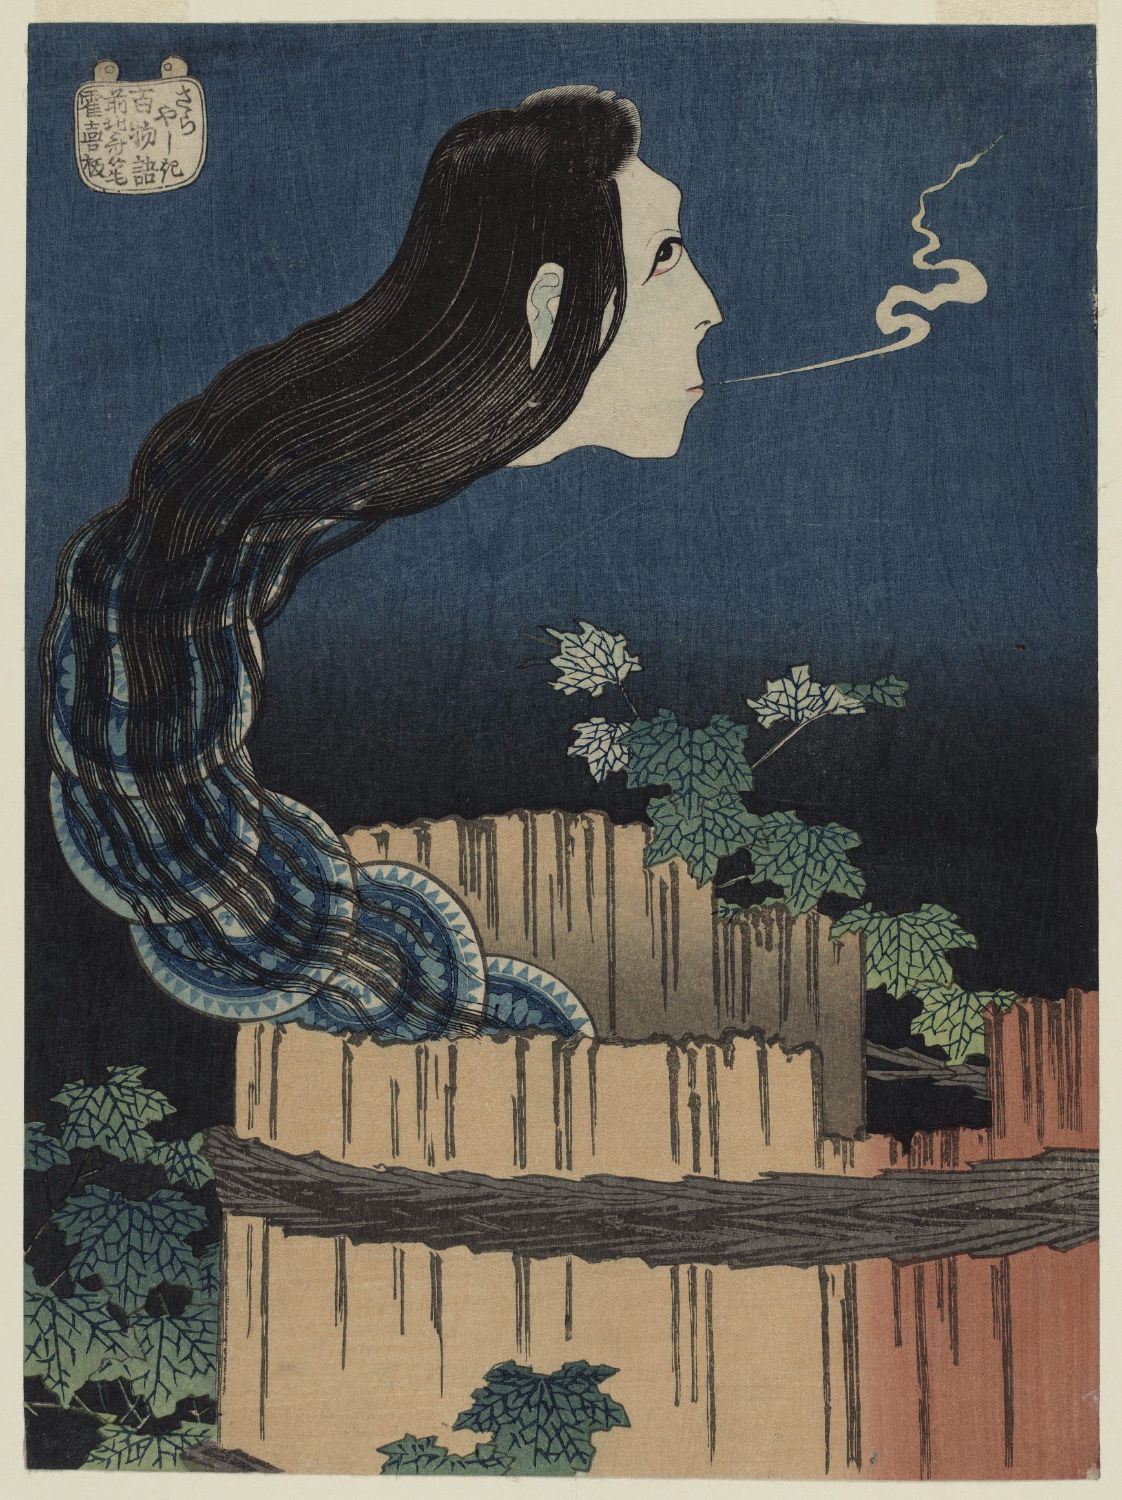 木版で囲まれた邸宅 by Katsushika Hokusai - 1831/32 - 23.7 x 17.6 cm 